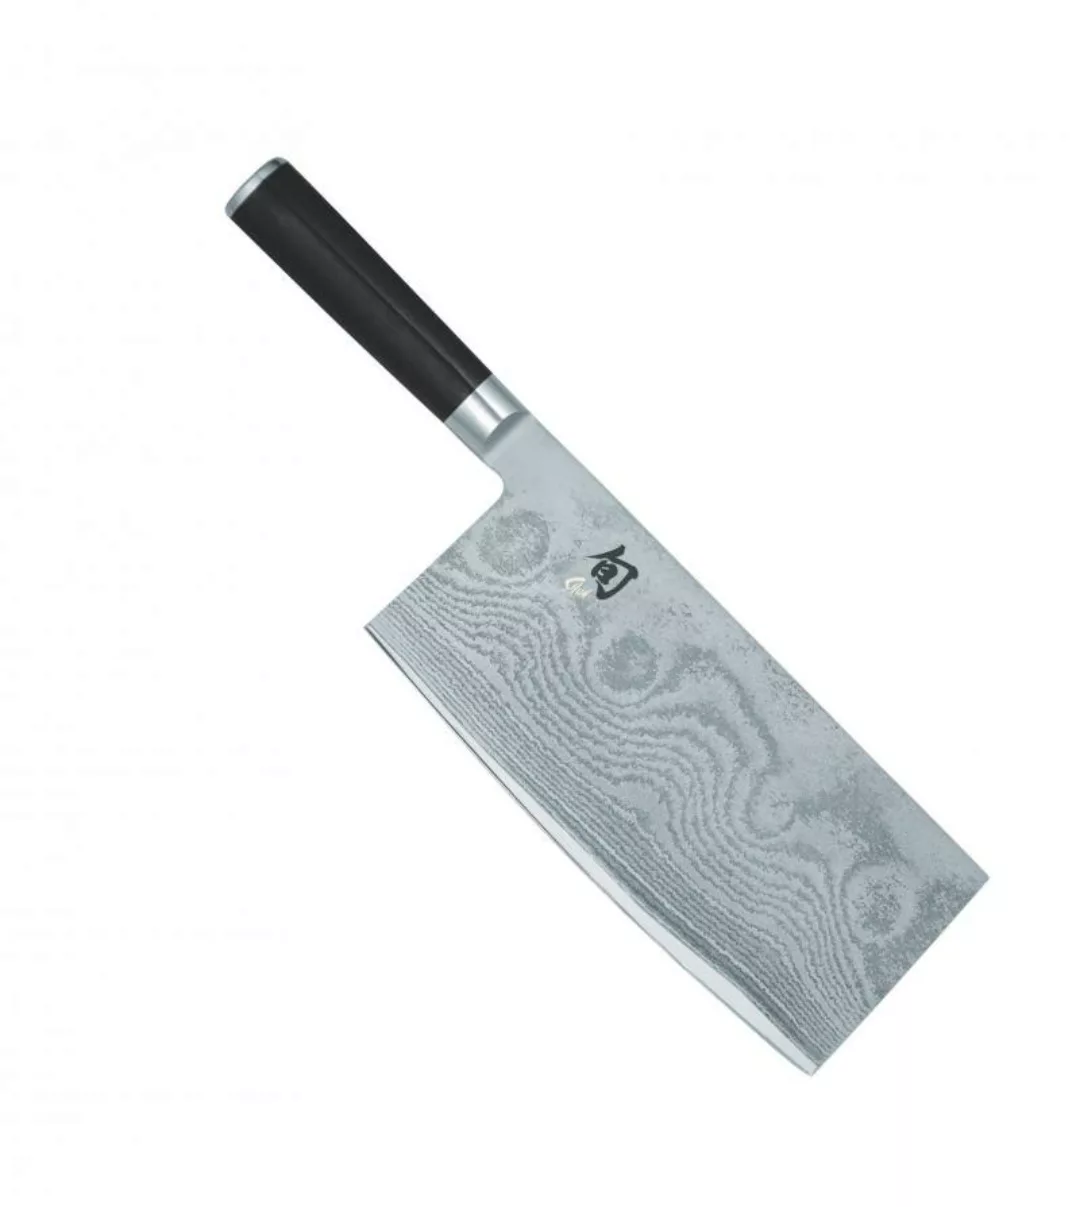 KAI Shun Classic China-Kochmesser 18 cm - Damaststahl - Griff Pakkaholz günstig online kaufen